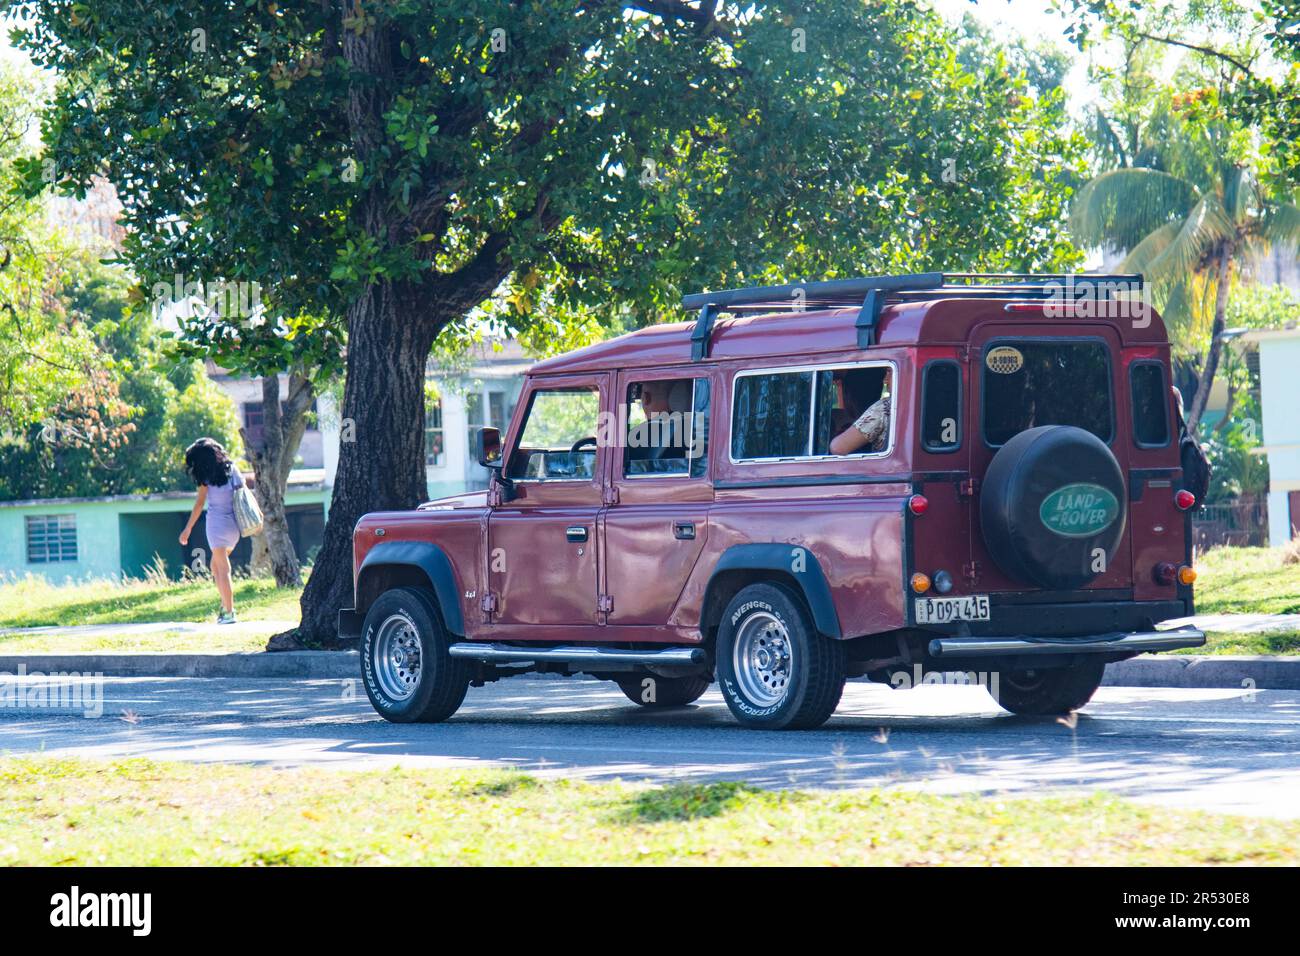 La vecchia macchina cubana rossa guida lungo una strada a l'Avana, Cuba, con un pneumatico Land Rover sul retro del veicolo. Foto Stock